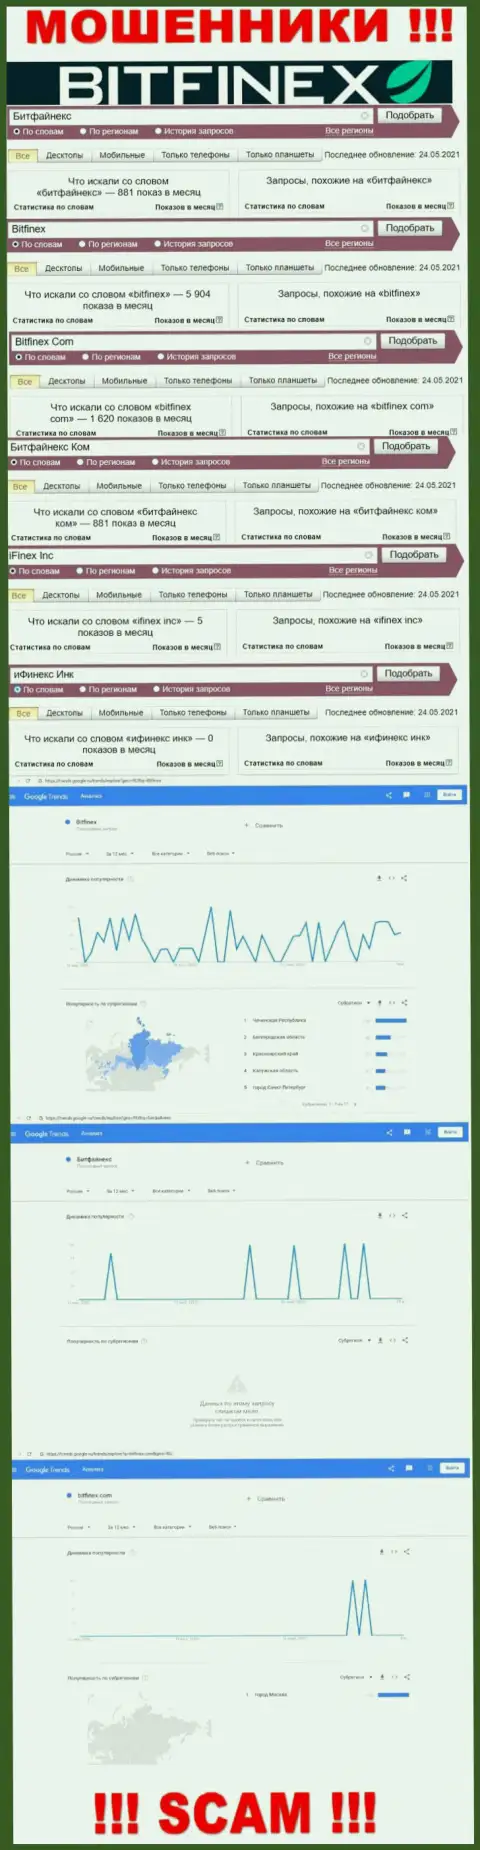 Число поисковых запросов в поисковиках глобальной сети по бренду мошенников Bitfinex